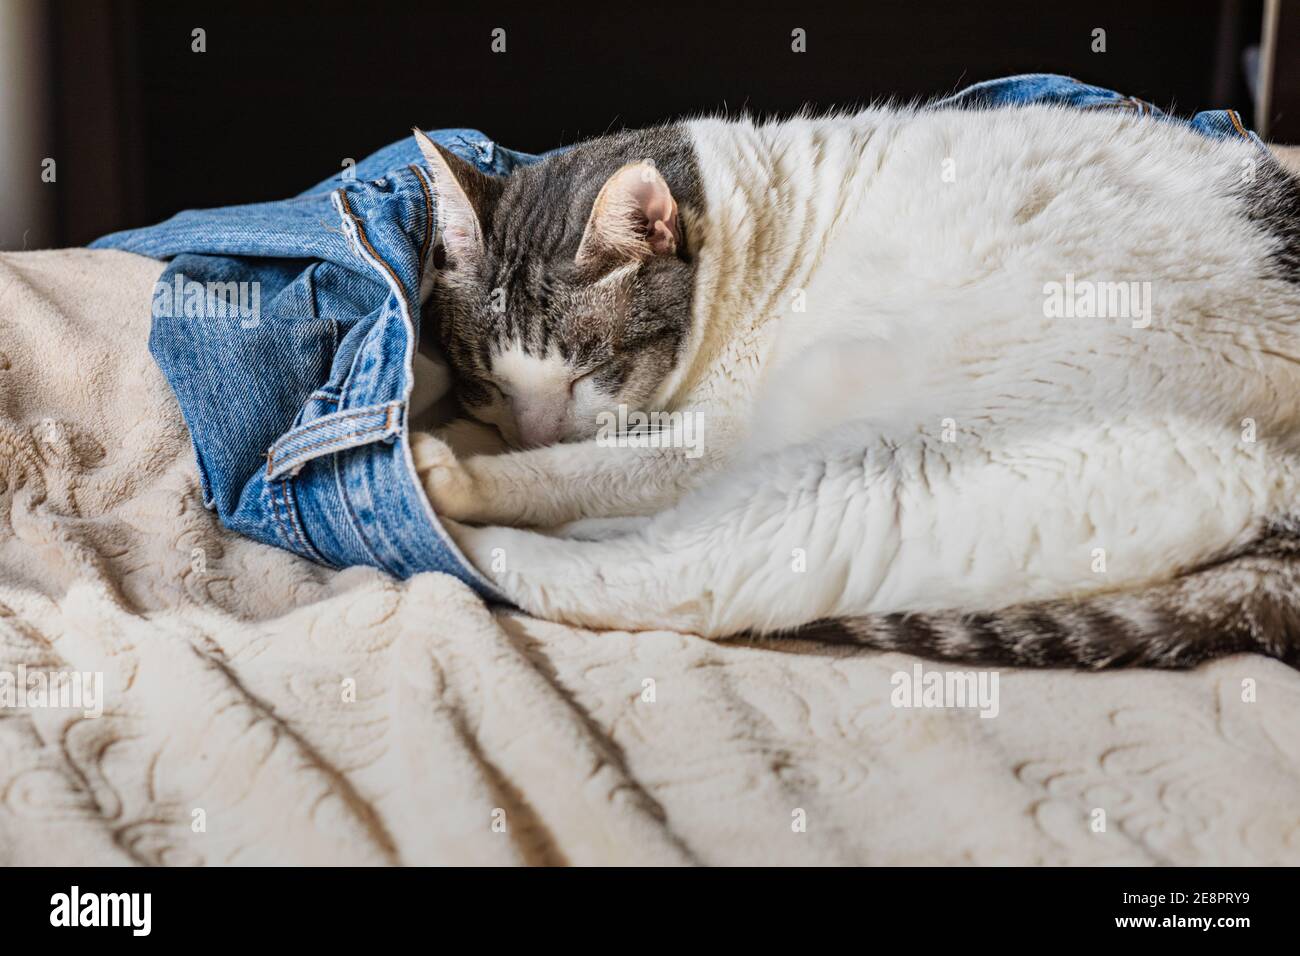 Eine entzückende weiße Katze schläft in einer blauen Jeans von jemandem auf einem Bett. Kuschelig und bequem. Stockfoto